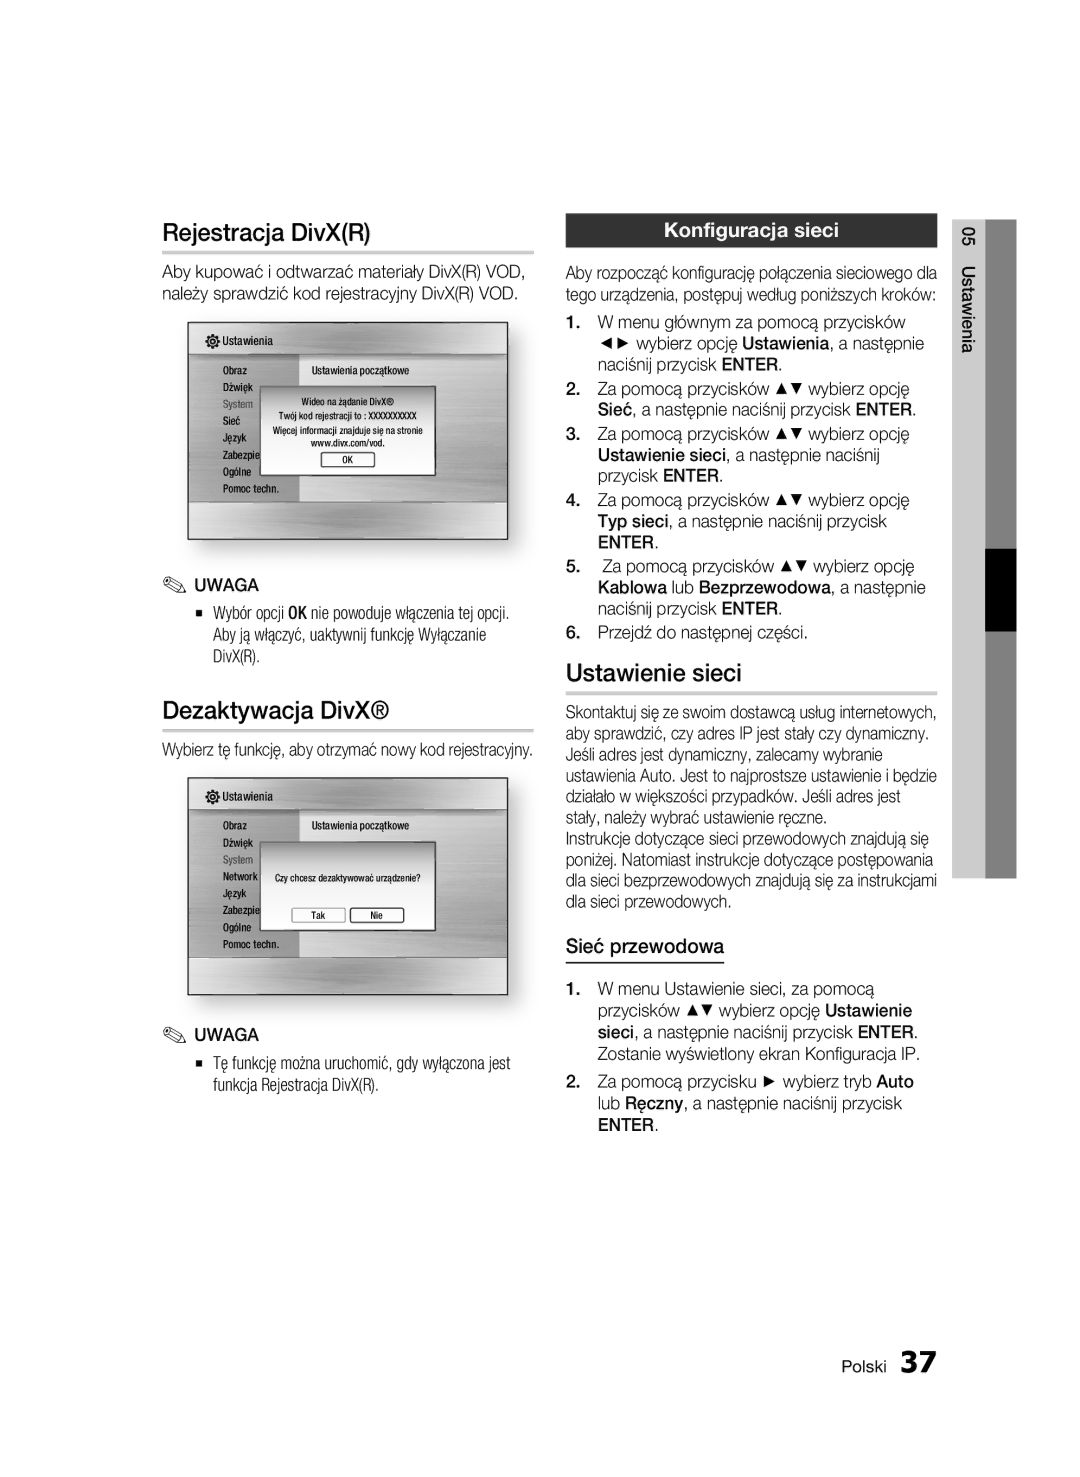 Samsung BD-C7500W/EDC manual Rejestracja DivXR, Dezaktywacja DivX, Ustawienie sieci, Konfiguracja sieci, Sieć przewodowa 